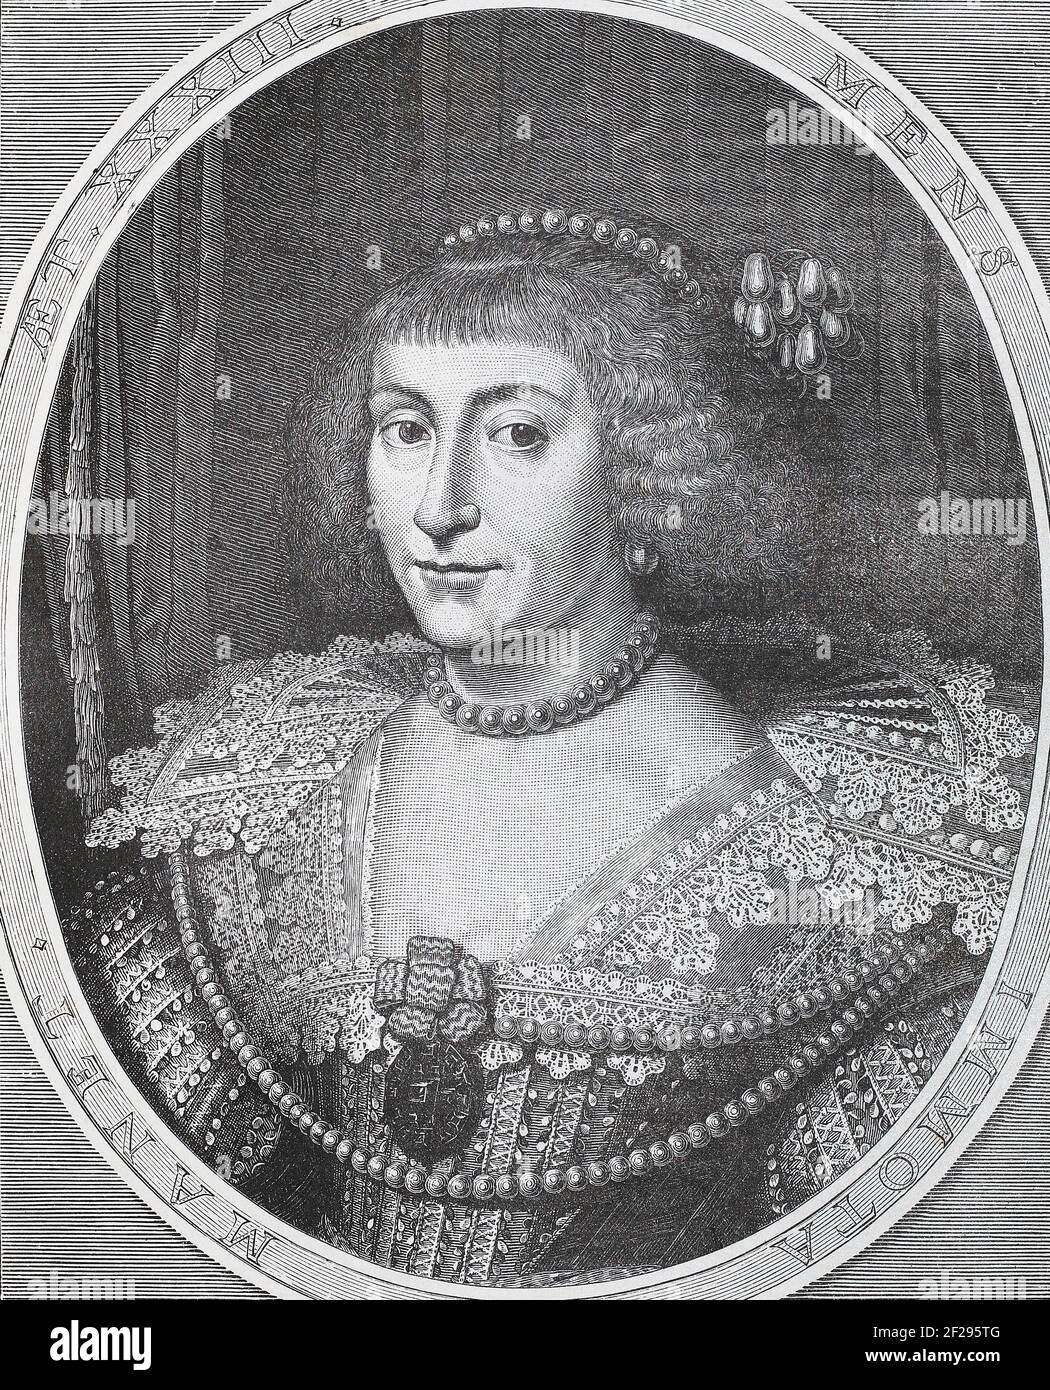 Elisabeth Stuart (19. August 1596 – 13. Februar 1662) war Kurfürstin der Pfalz und kurz Königin von Böhmen als Ehefrau Friedrichs V. von der Pfalz. Da die Herrschaft ihres Mannes in Böhmen und Pfalz nur einen Winter dauerte, wird Elisabeth oft als "Winterkönigin" bezeichnet. Elisabeth war das zweite Kind und älteste Tochter von James VI und ich, König von Schottland, England und Irland, und seine Frau, Anne von Dänemark. Mit dem Untergang des letzten Stuart Monarchen im Jahr 1714, Elizabeth Enkel gelang auf den britischen Thron als Georg I., Initiierung der Hannoveraner Dynastie. Stockfoto